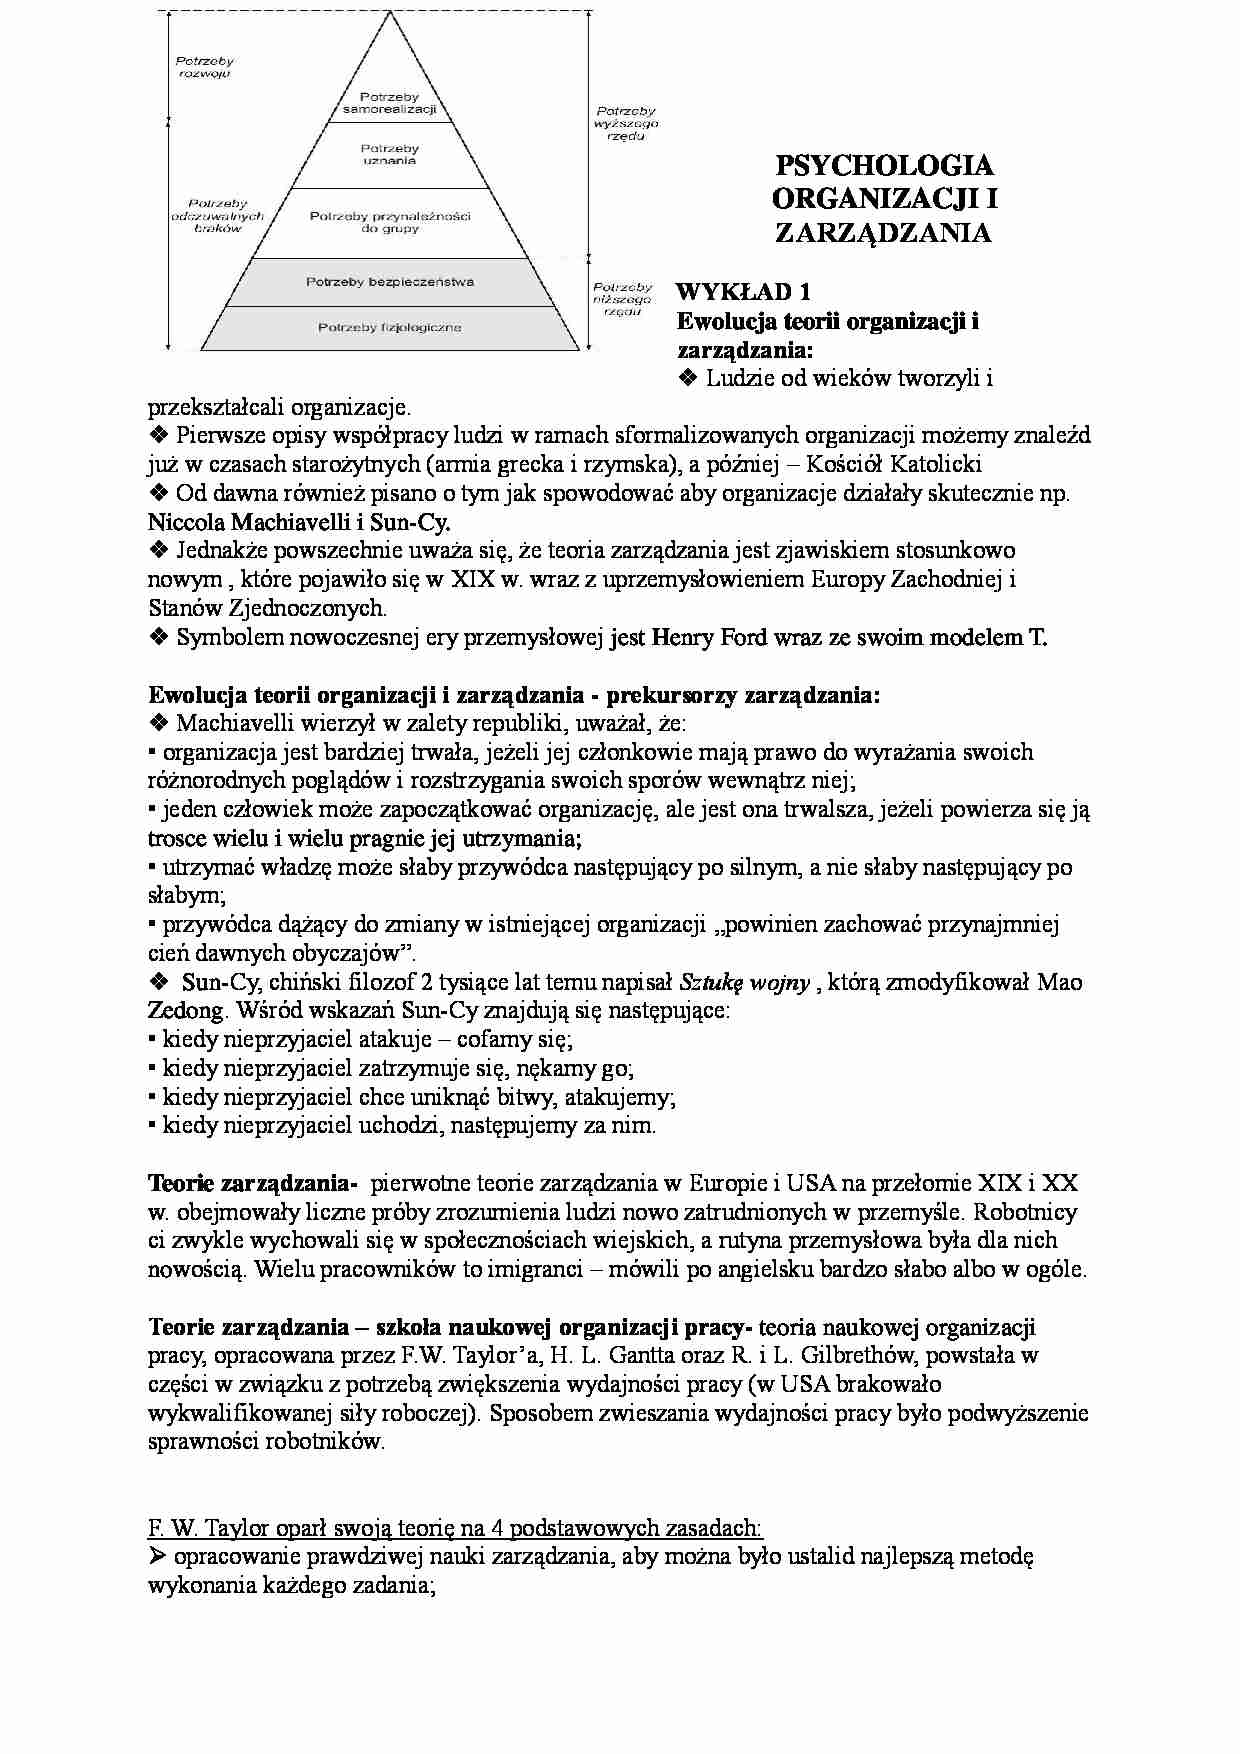 Psychologia organizacji i zarządzania-wykłady - strona 1